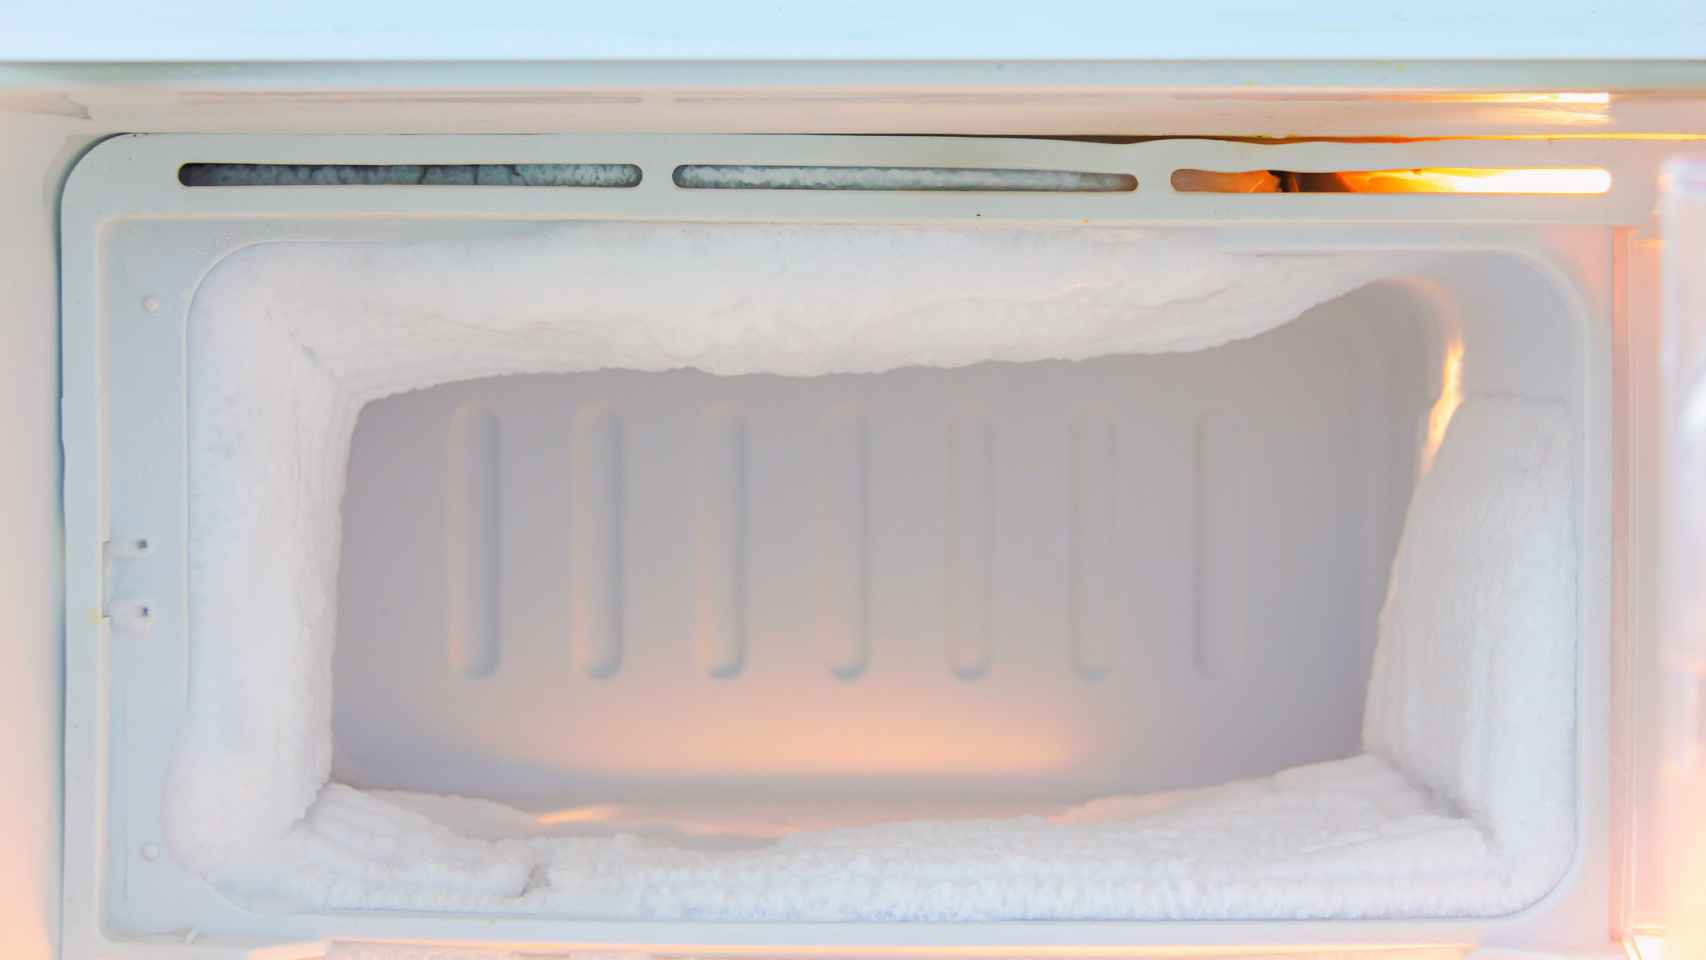 El sencillo truco del papel de aluminio para retirar el hielo del congelador